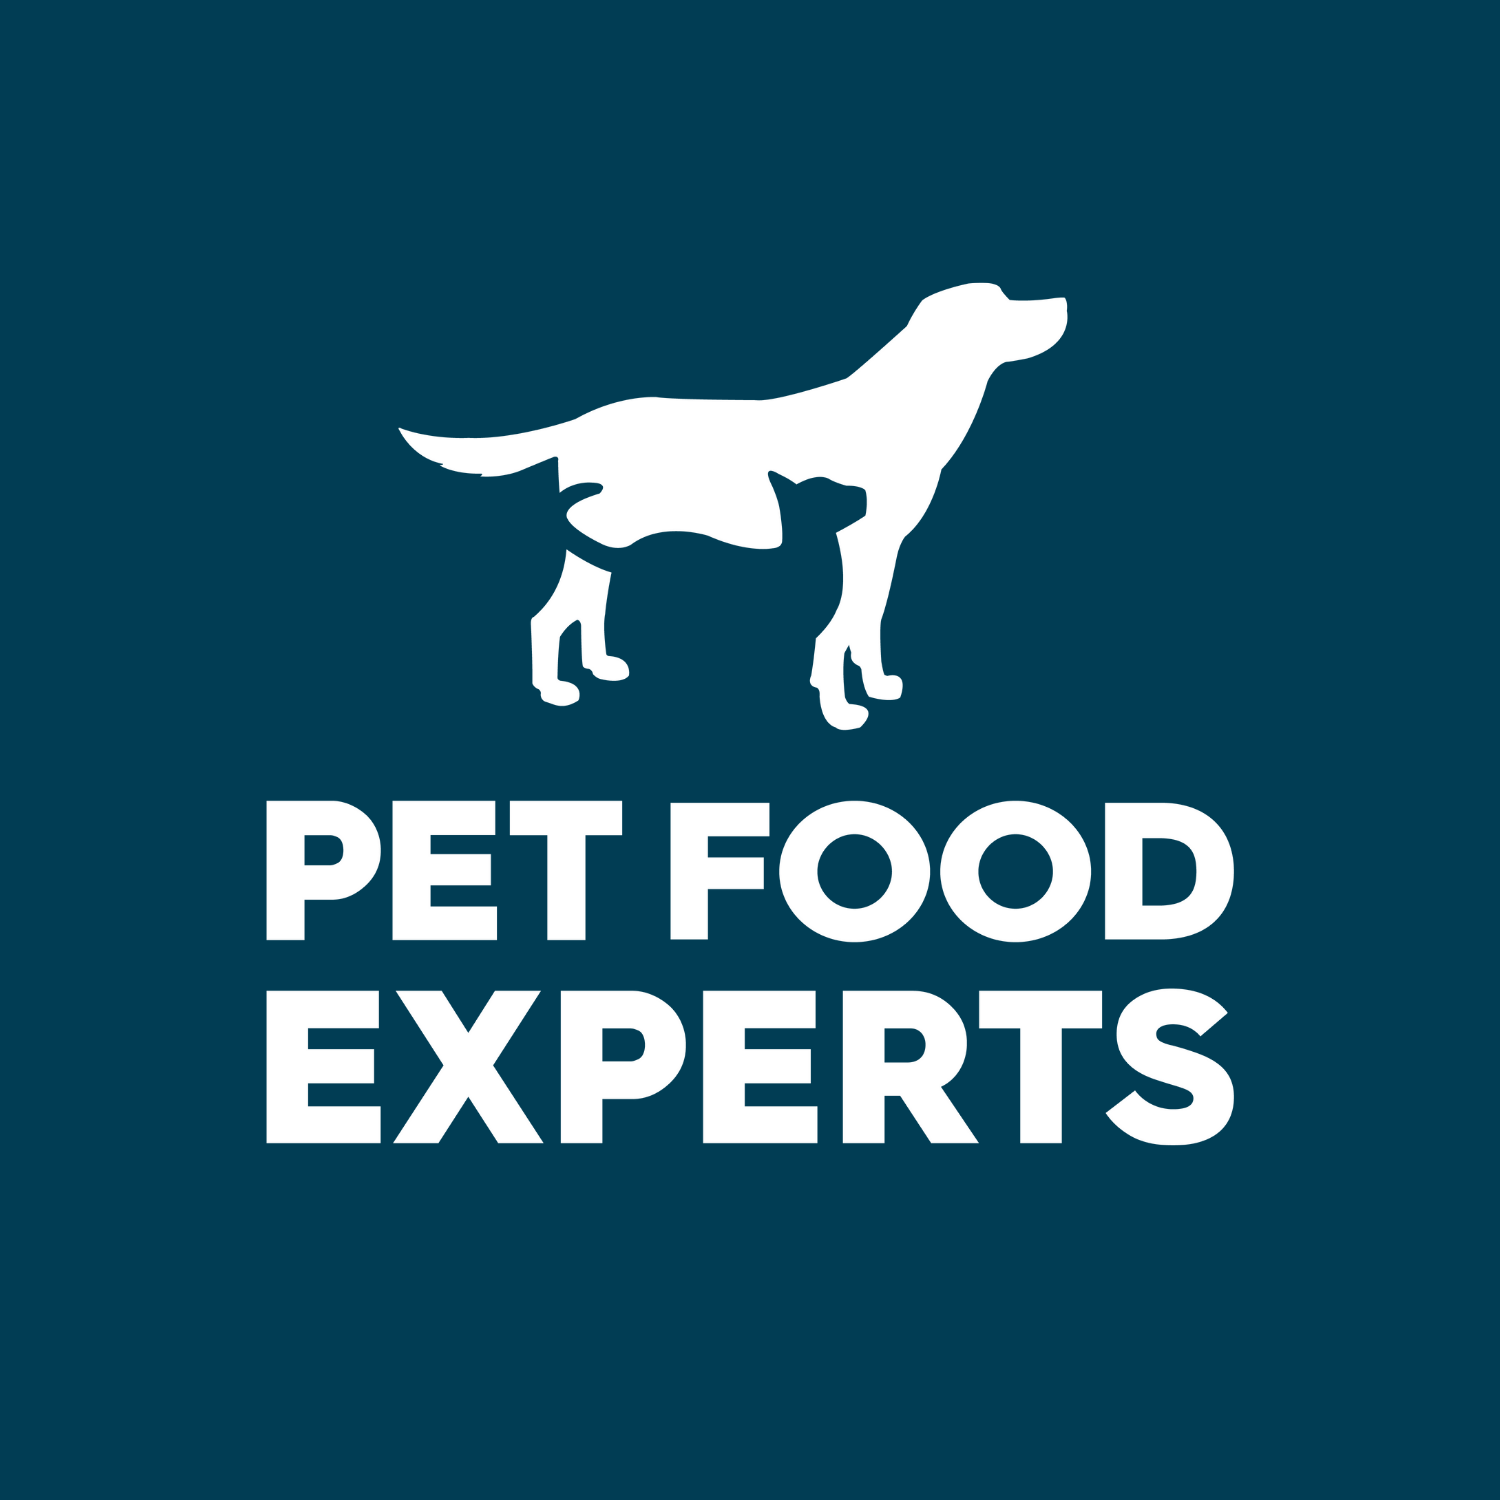 Pet Food Experts